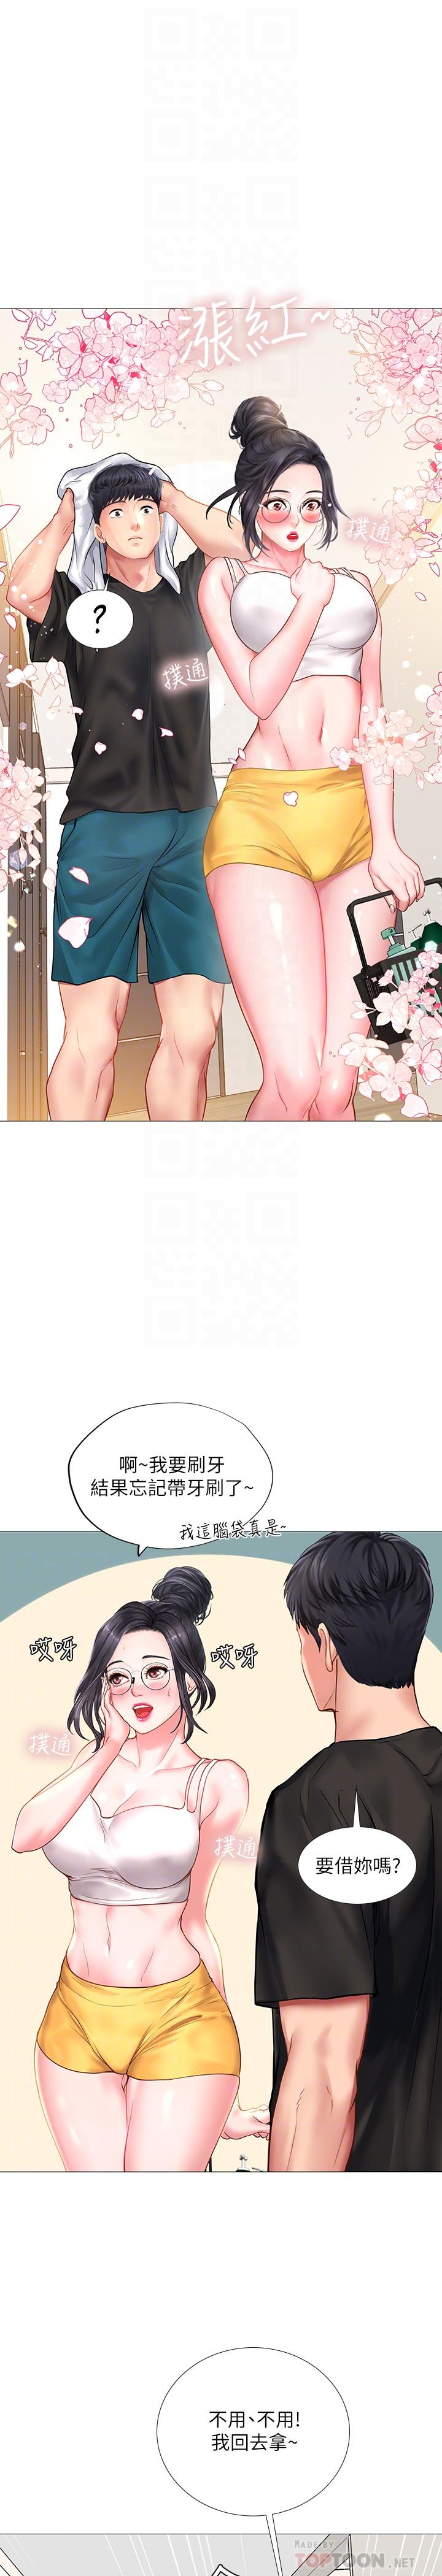 韩国污漫画 享樂補習街 第24话-和智妍姐初次约会 6